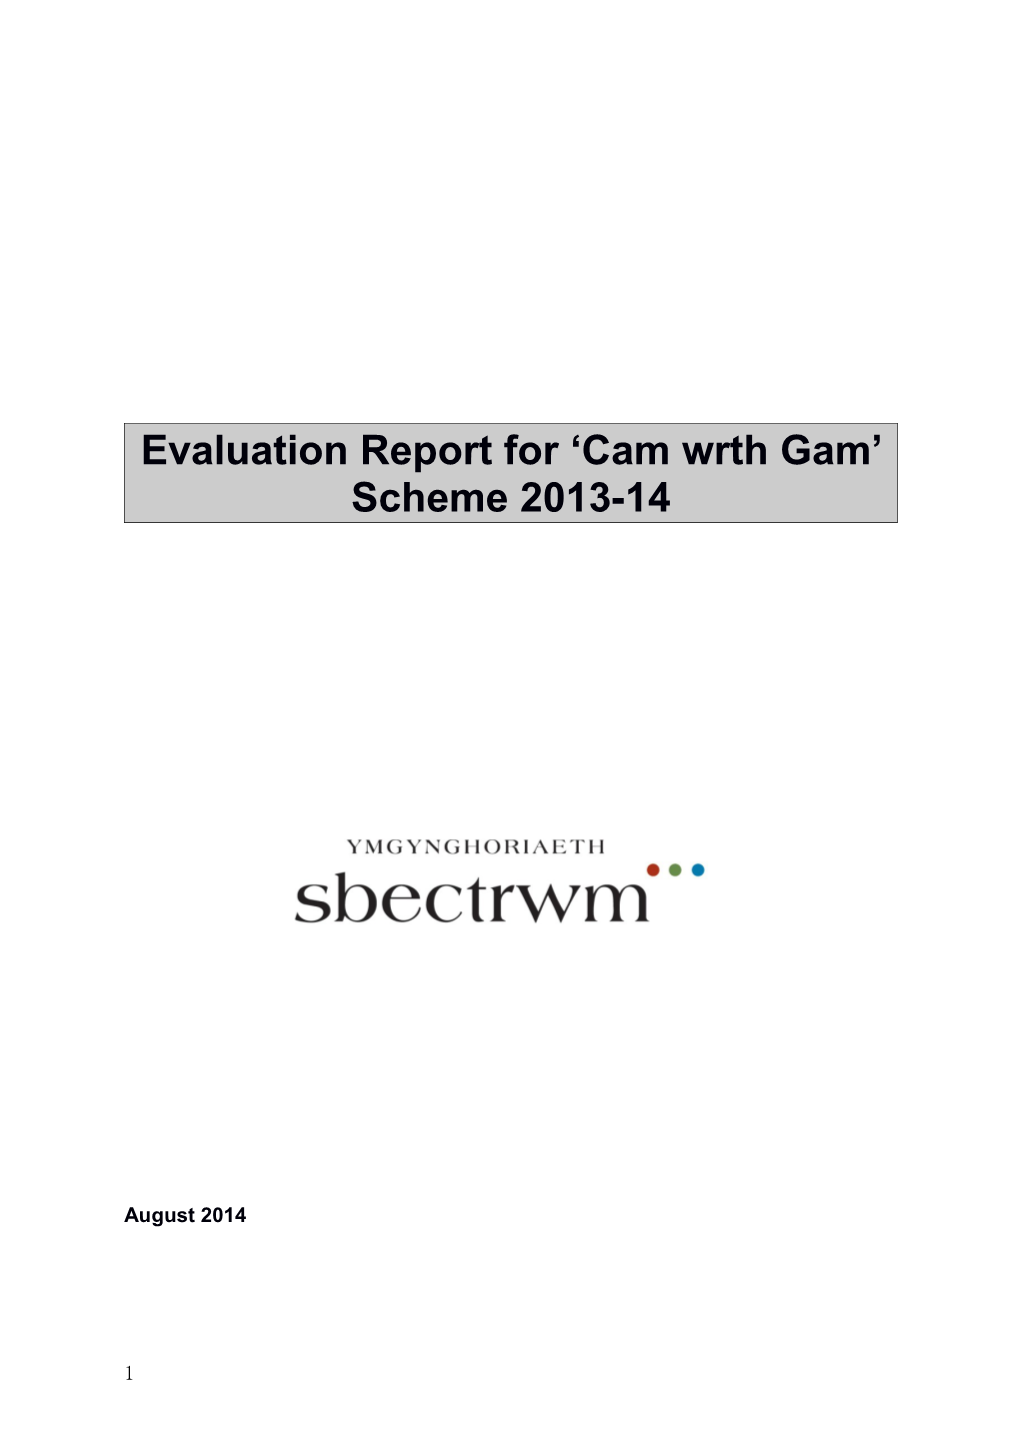 Evaluation Report for Cam Wrth Gam Scheme 2013-14